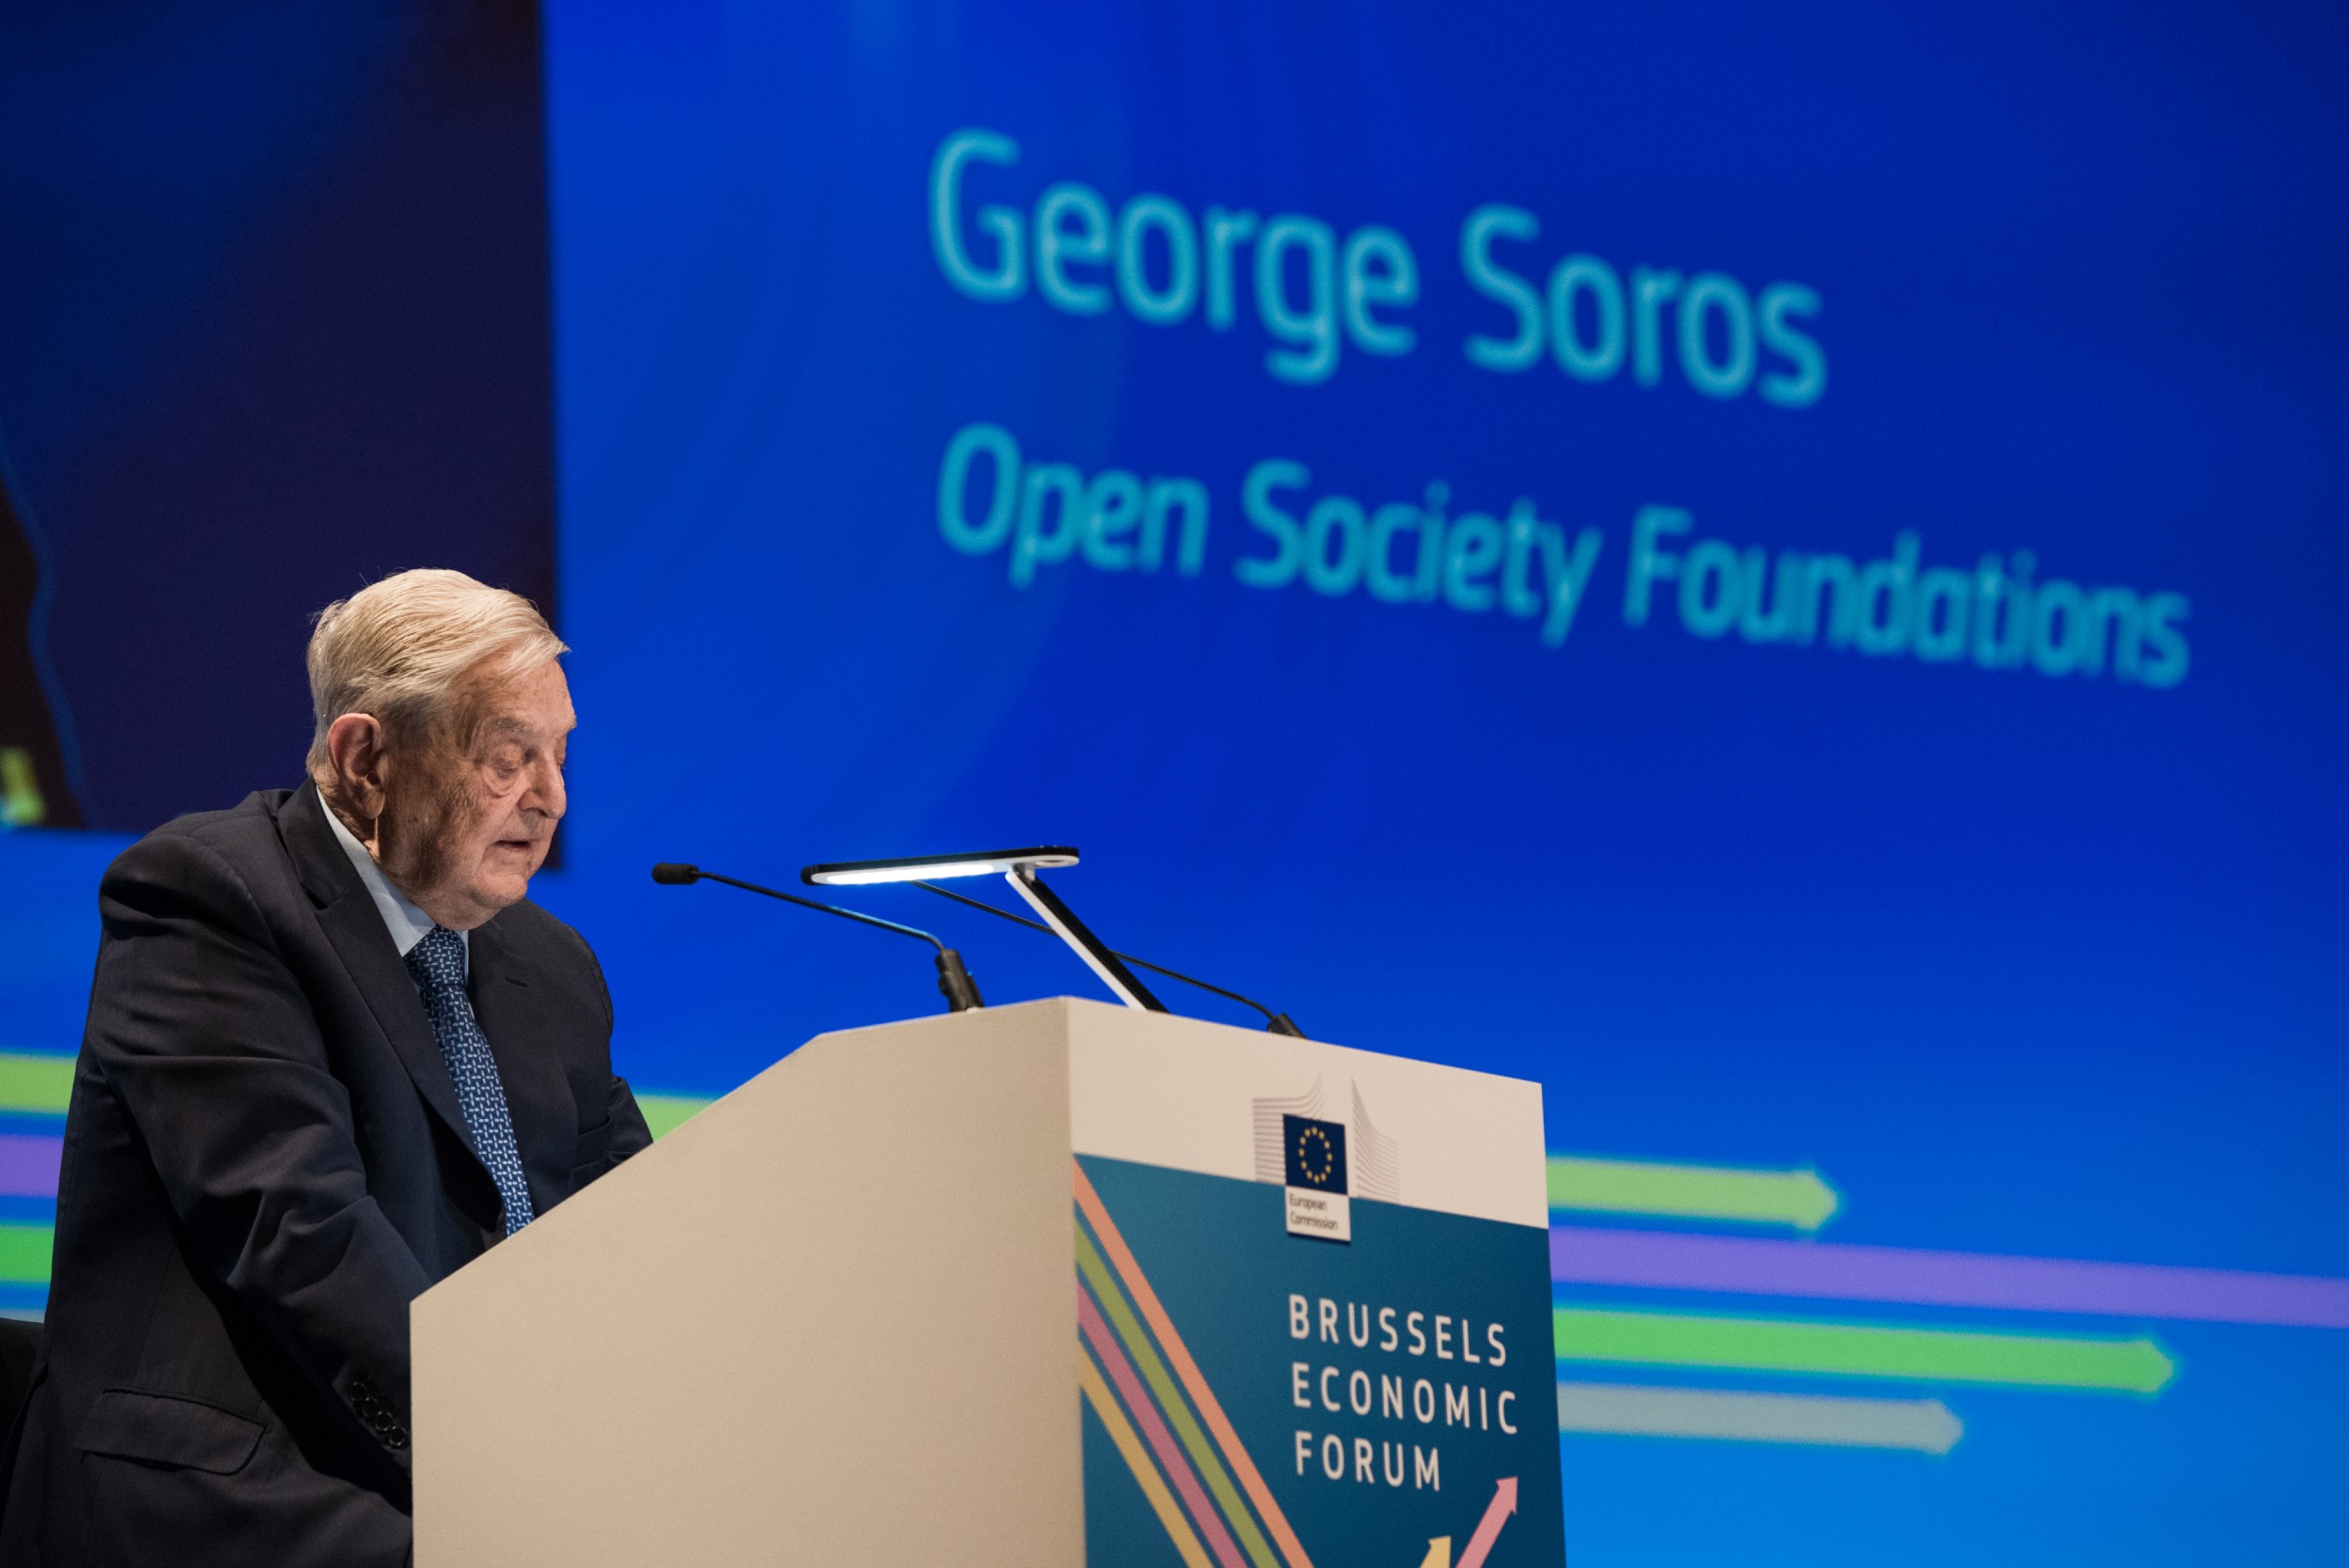 Џорџ Сорош, оснивач и председник Фонда за отворено друштво говори на Бриселском економском форуму, 01. јун 2017. (Фото: European Commission)